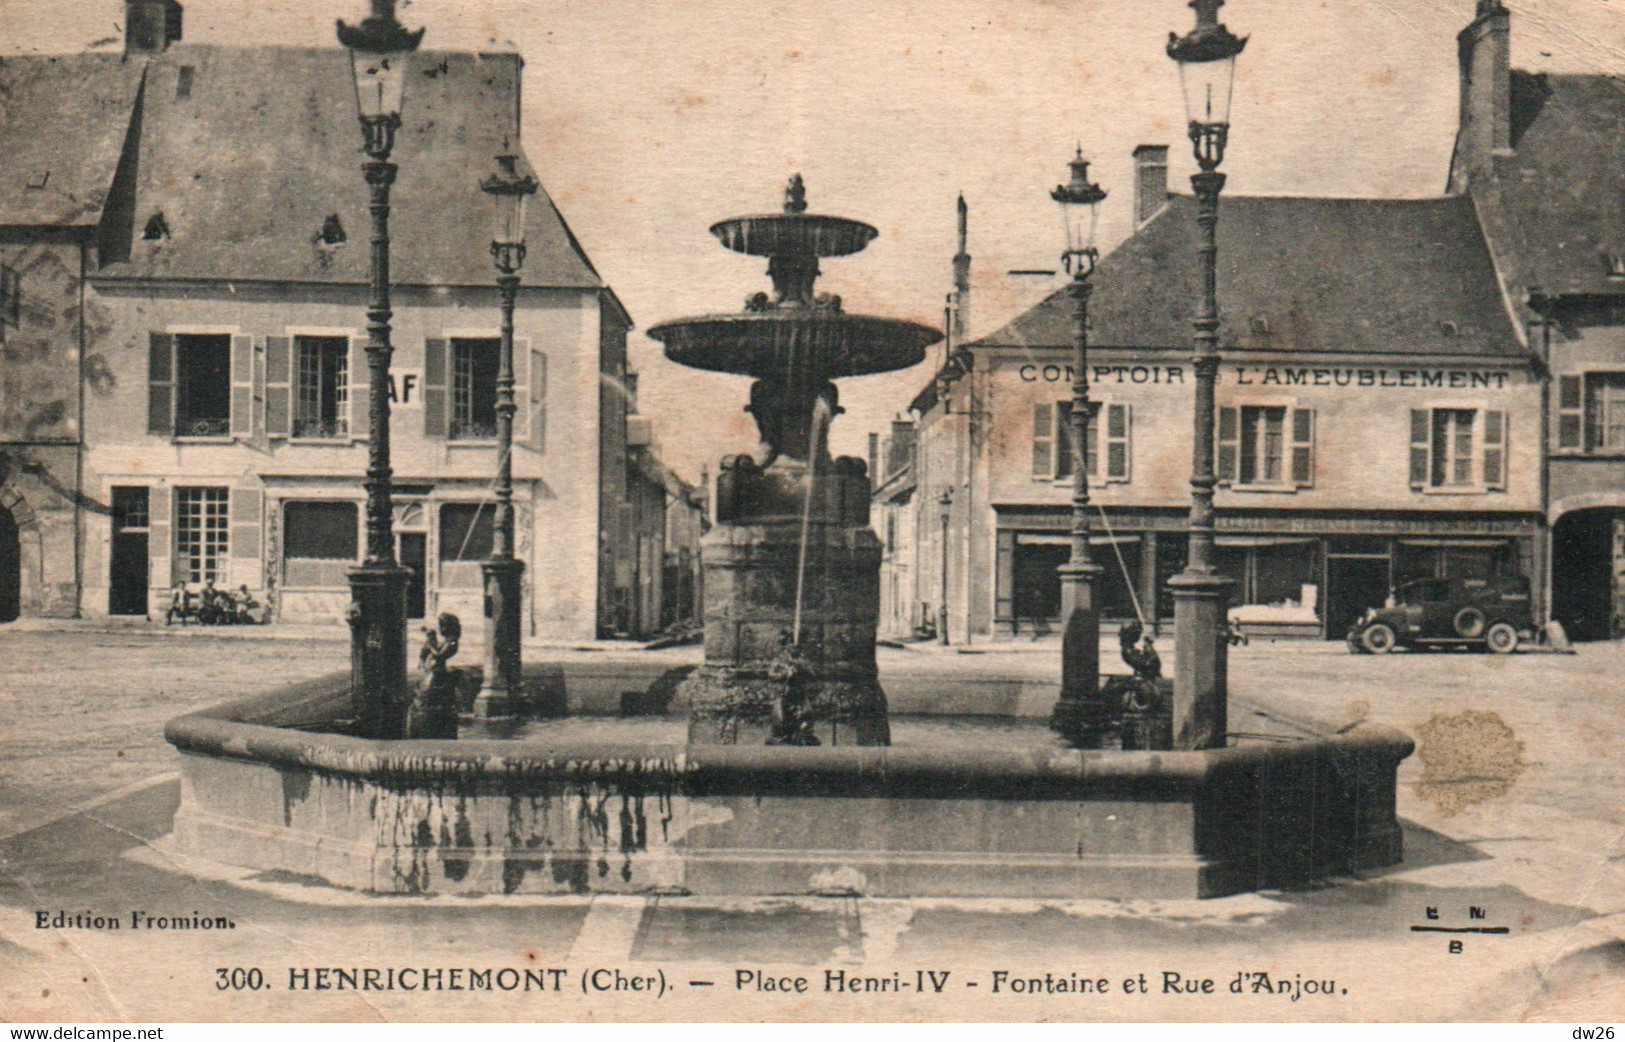 Henrichemont (Cher) Place Henri IV, Fontaine Et Rue D'Anjou, Café - Edition Fromion - Carte N° 300 - Henrichemont